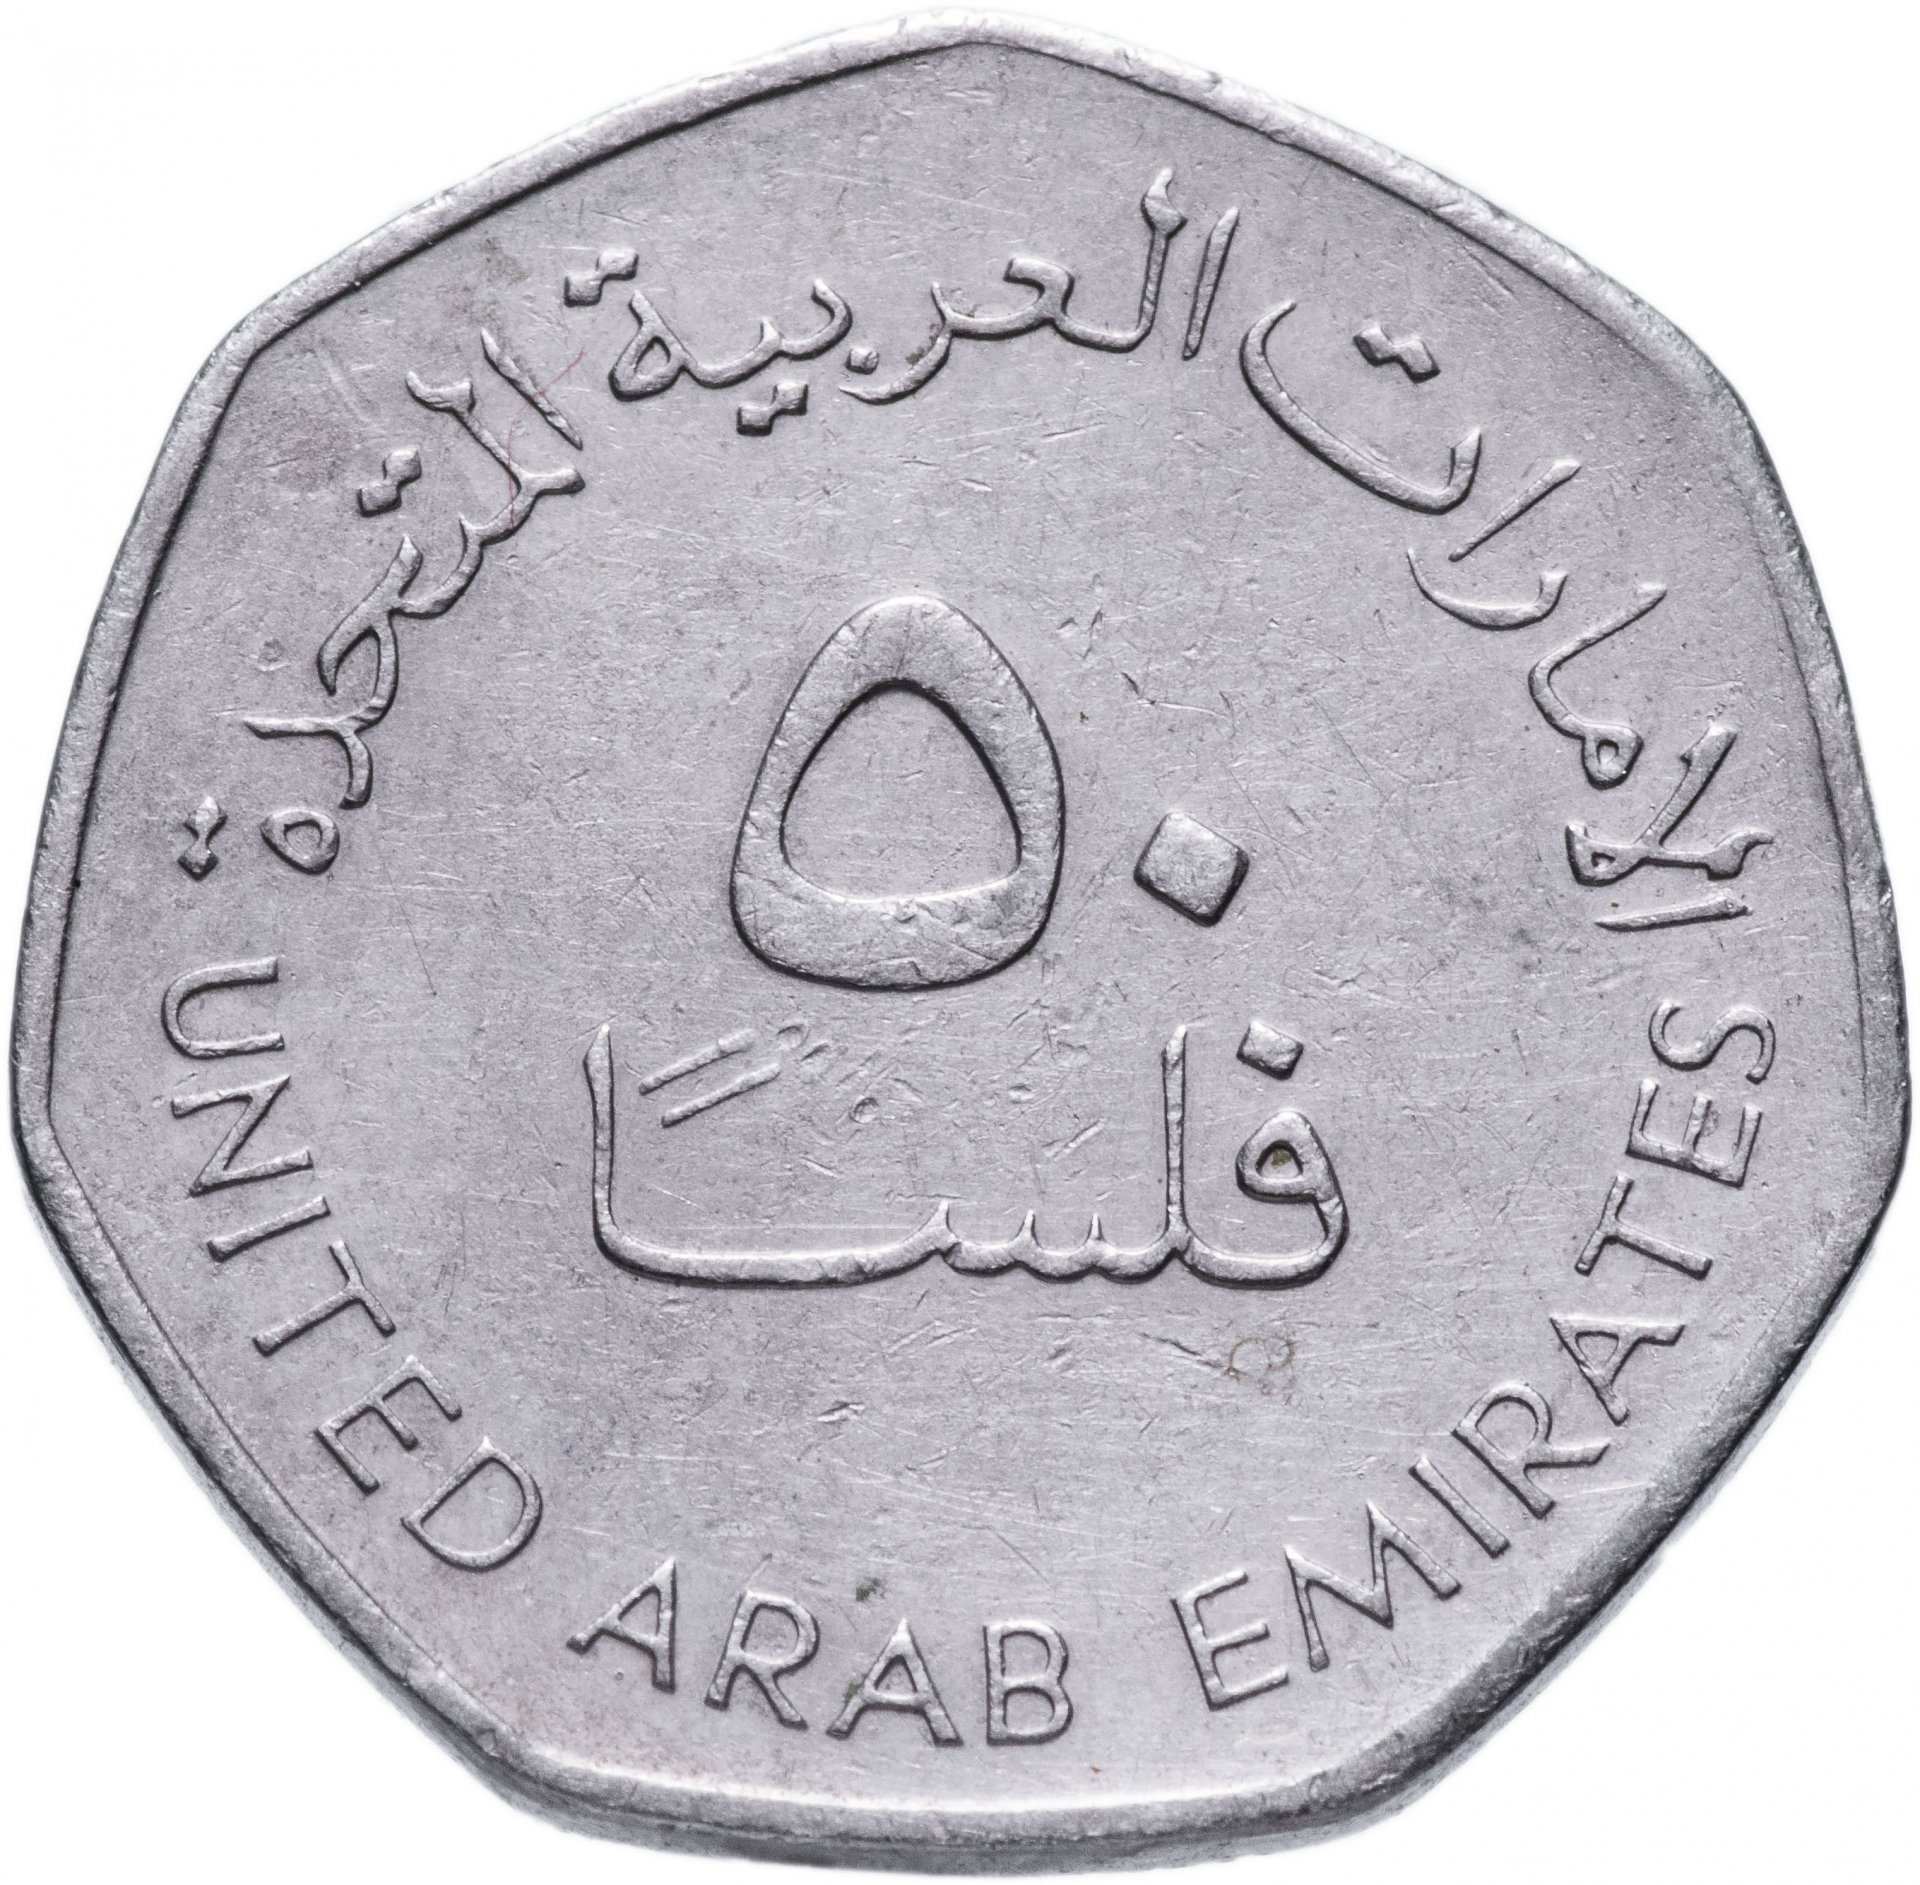 12000 дирхам. 50 Филсов 1995-2007 ОАЭ. Арабские эмираты монета 50 филсов. Монеты 50 филсов арабский. 50 Филсов 2007 ОАЭ.